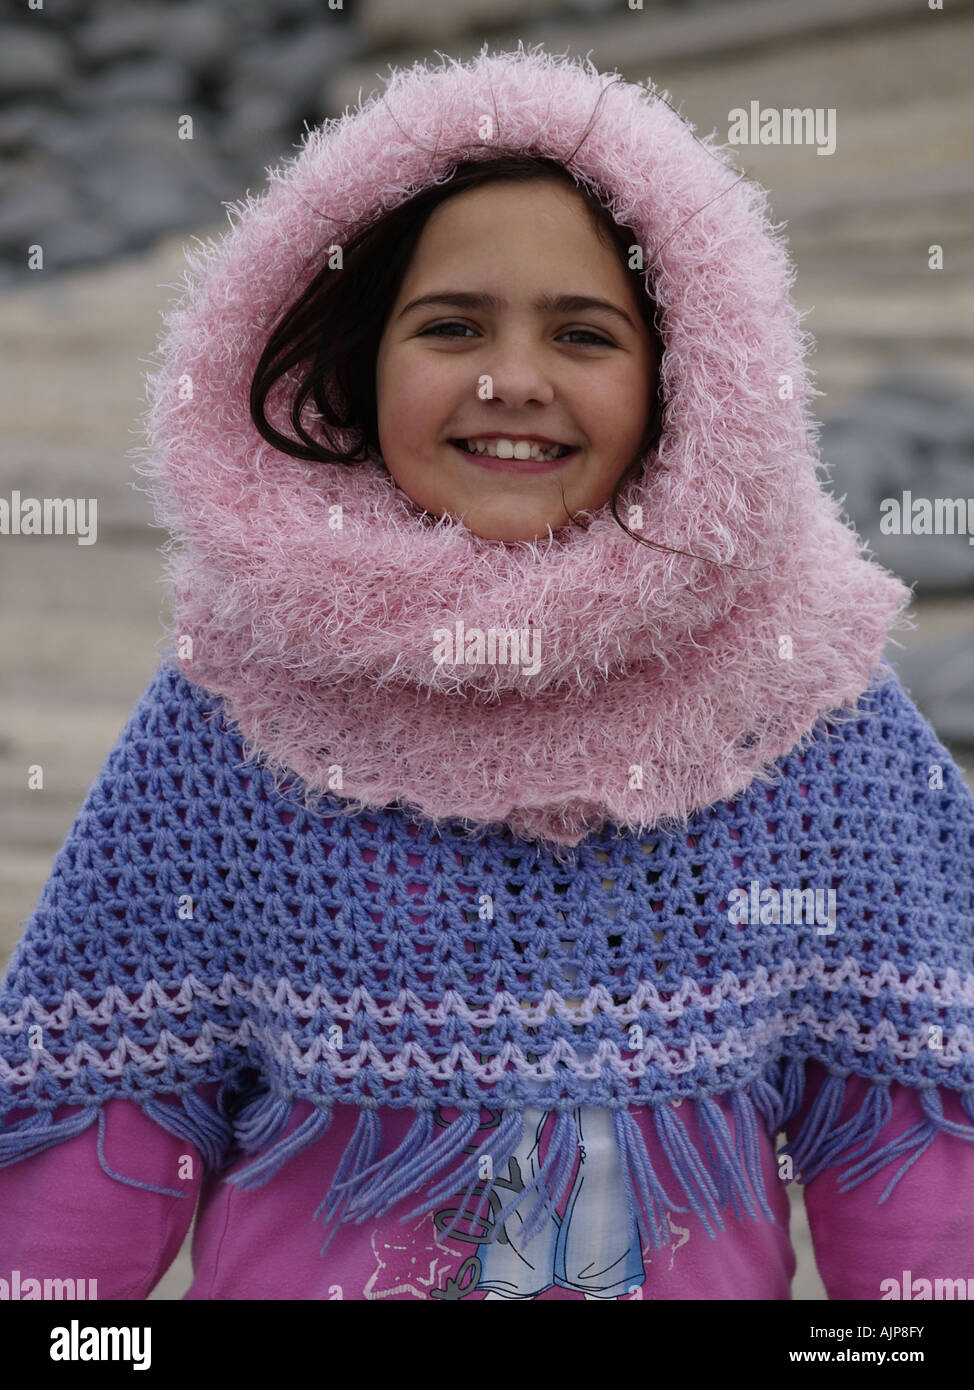 Una morena vestida de rosa bufanda tubo encima de su cabeza, woolly poncho y sonriente en la playa Fotografía de - Alamy